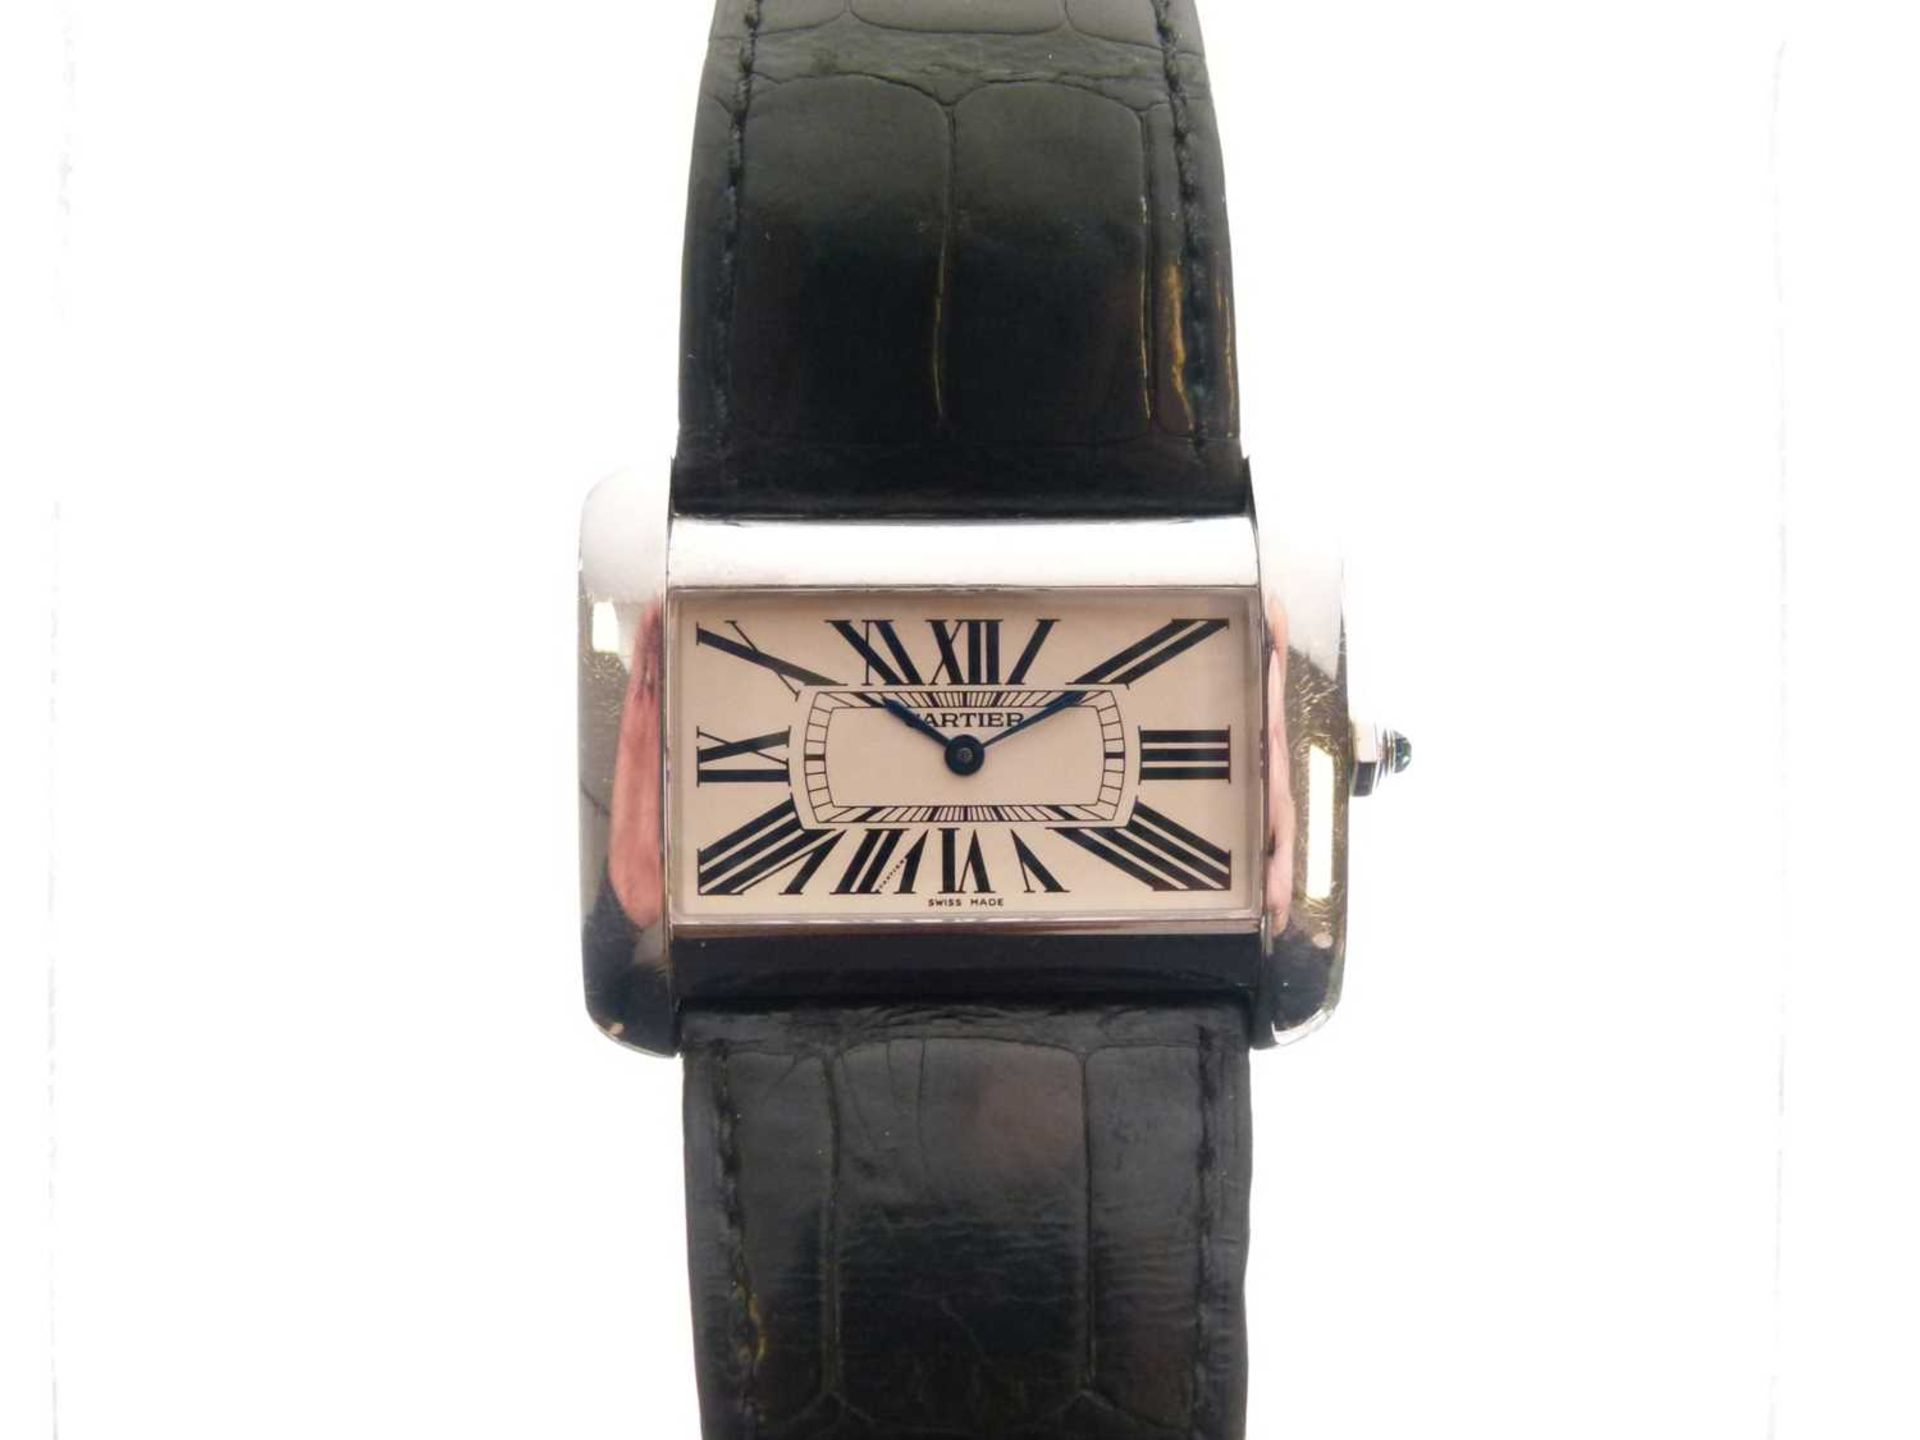 Cartier - Gentleman's Tank Divan stainless steel cased wristwatch - Image 8 of 8